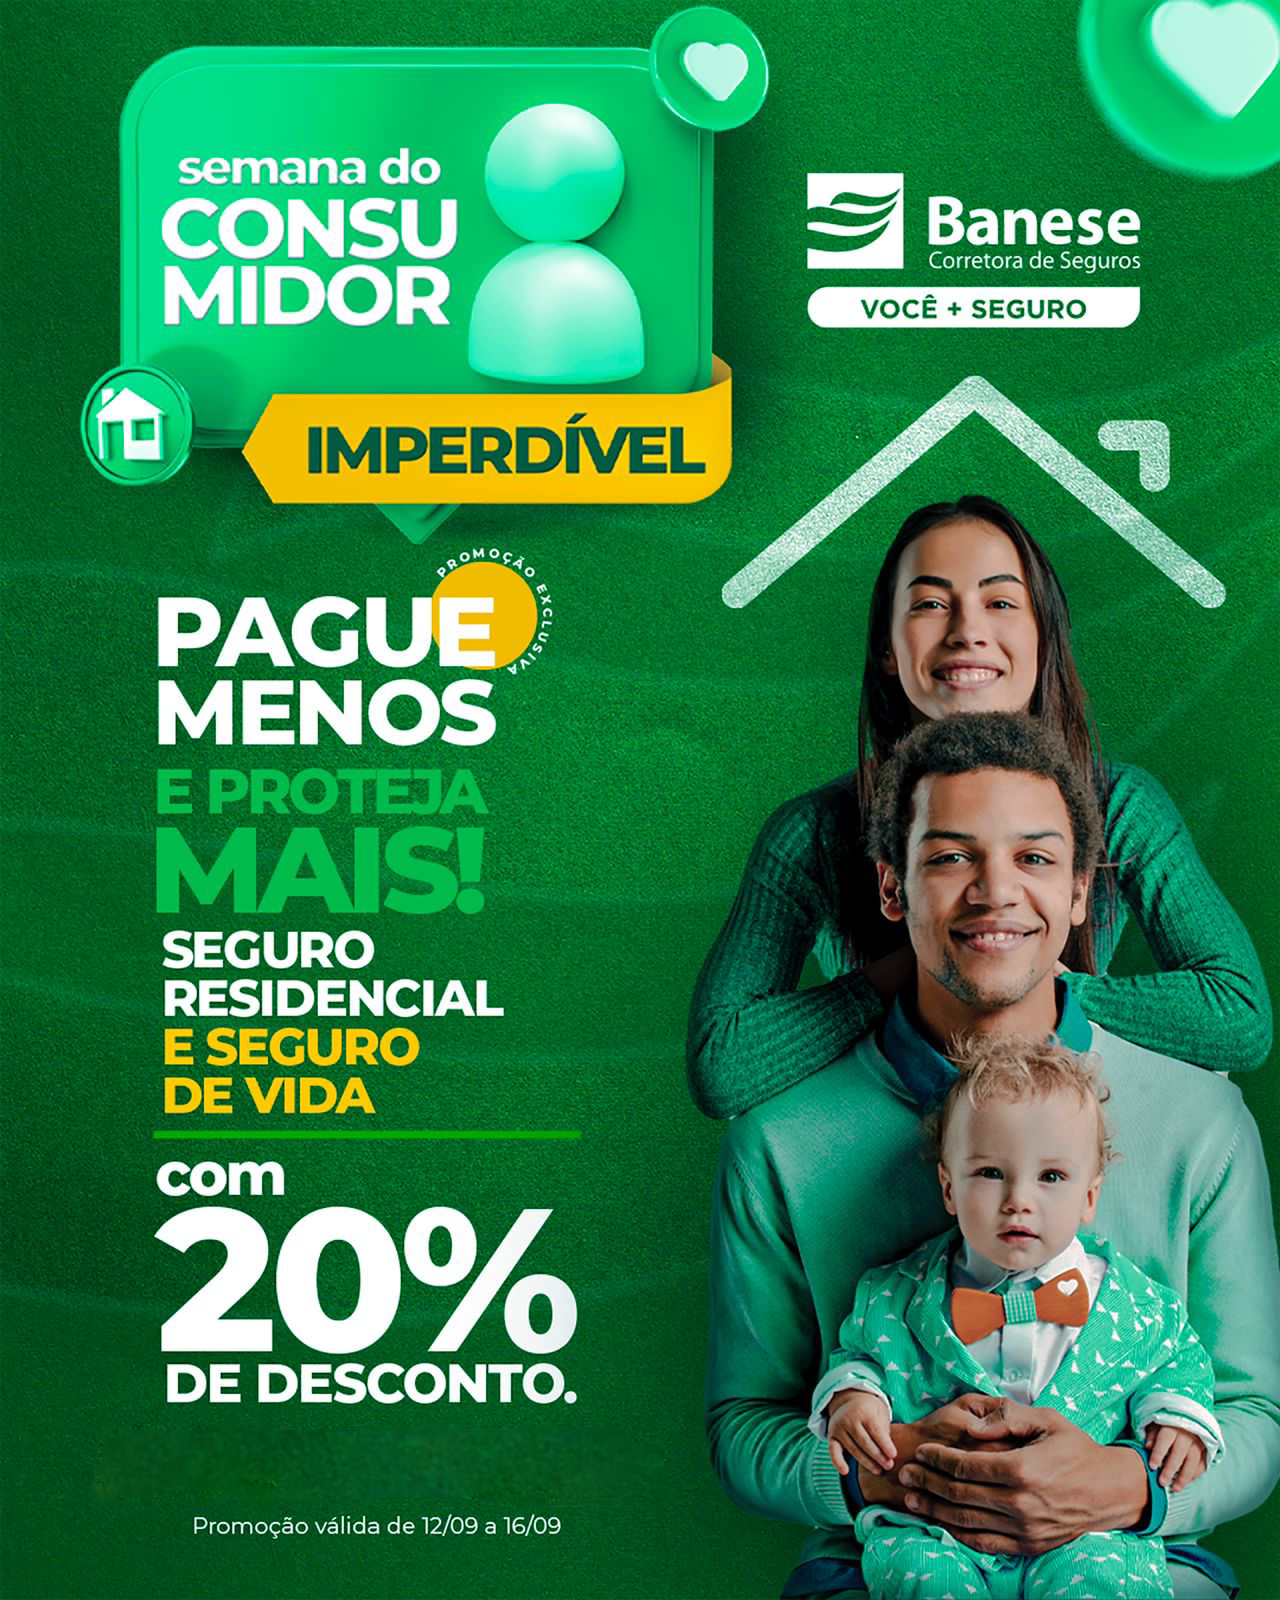 Banese Corretora: seguros de vida e residencial com 20% de desconto